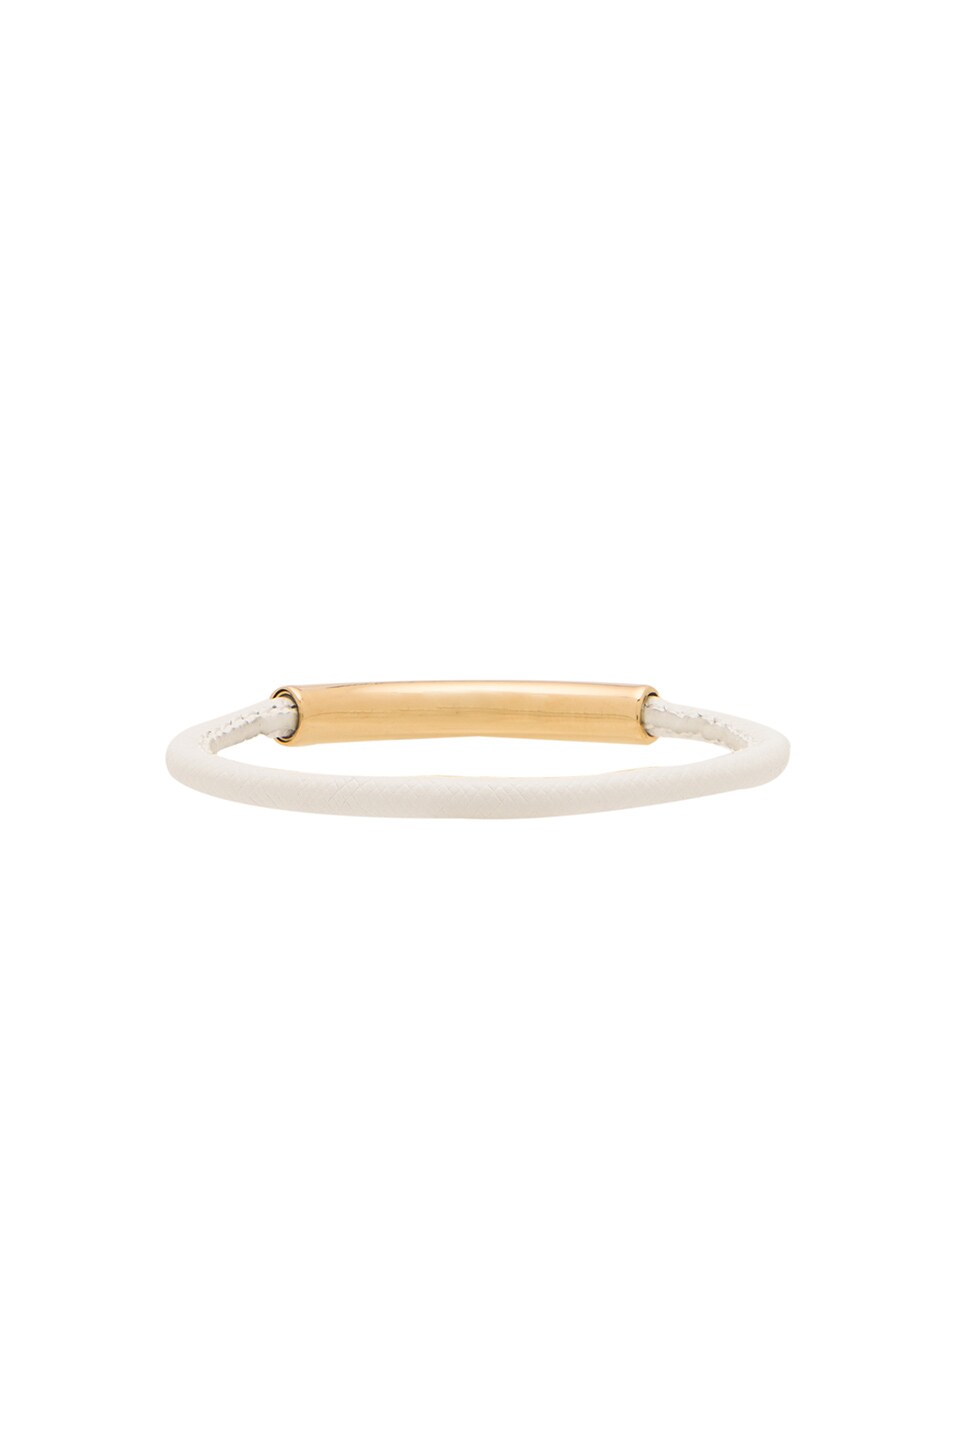 Michael Kors Padlock Leather Bracelet in Gold  White